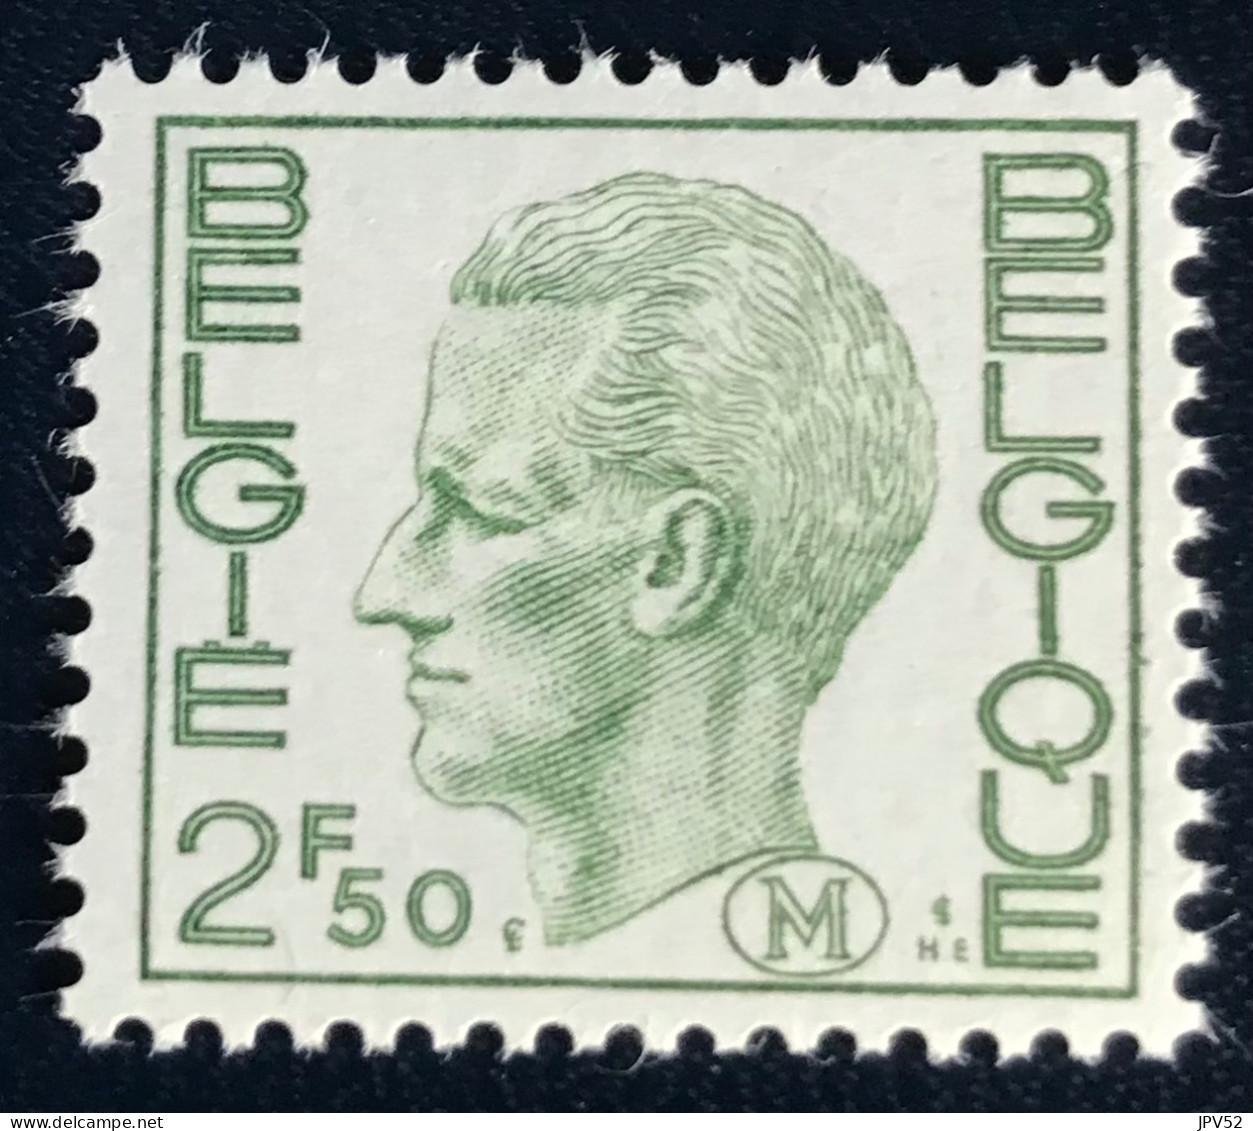 België - Belgique - C18/40 - 1972 - MNH - Michel 3 - Militair - Koning Boudewijn - Briefmarken [M]